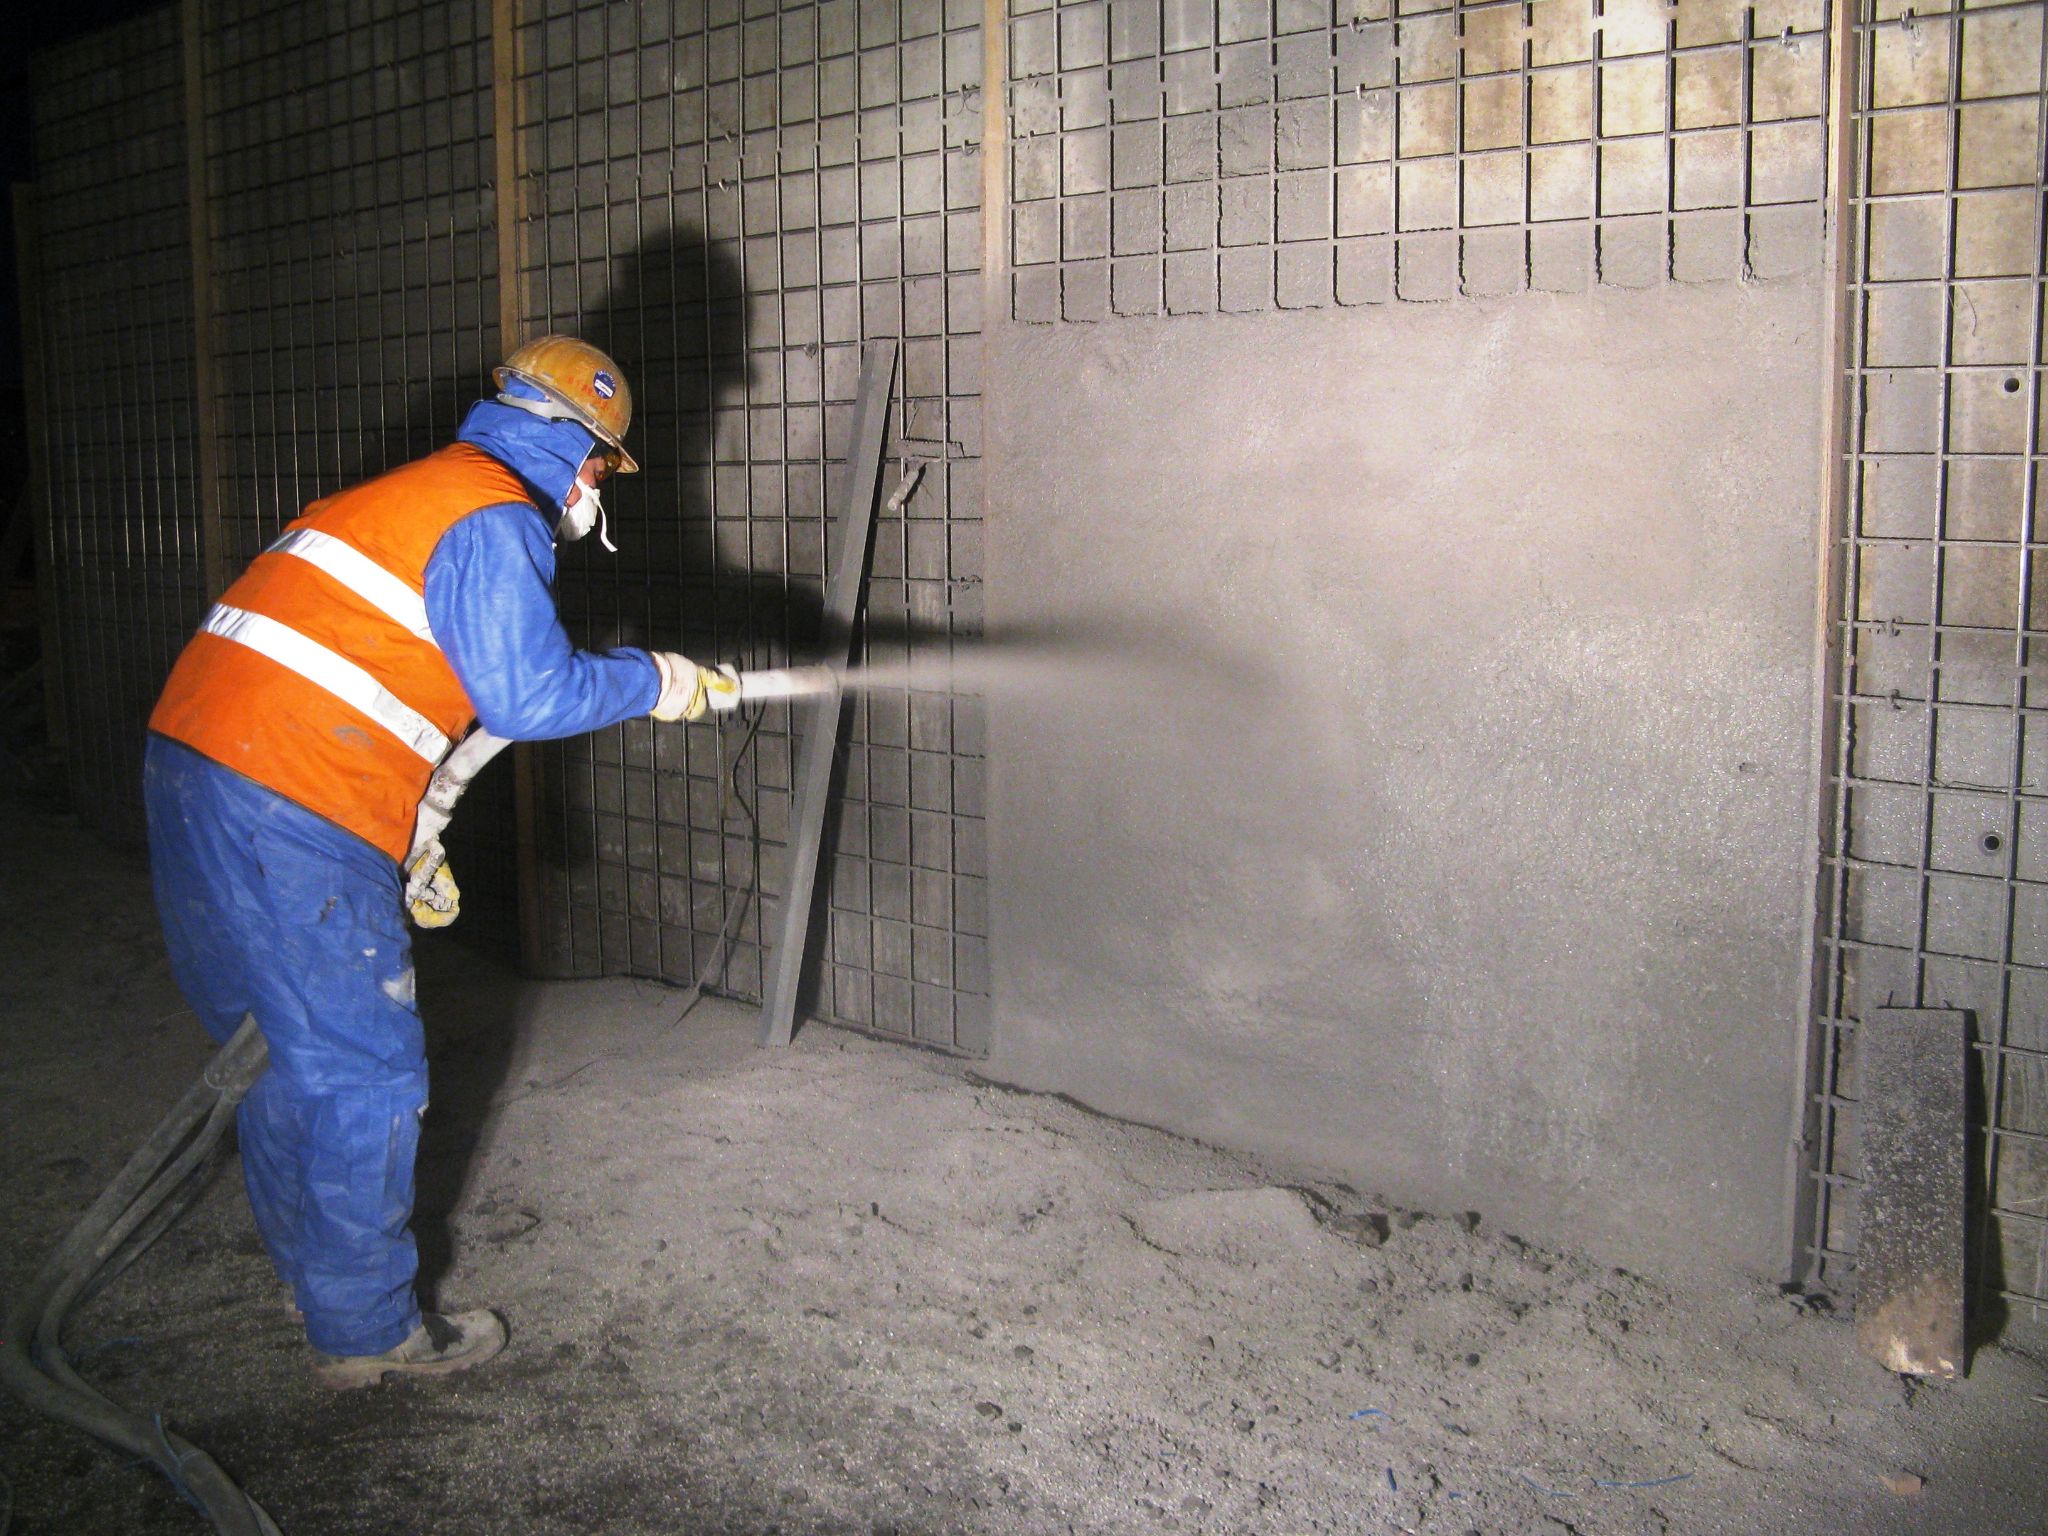 Очистка бетонных поверхностей. Обработка бетона. Очистка бетонных поверхностей сжатым воздухом. Распалубливание бетона. Очистка бетонной поверхности.